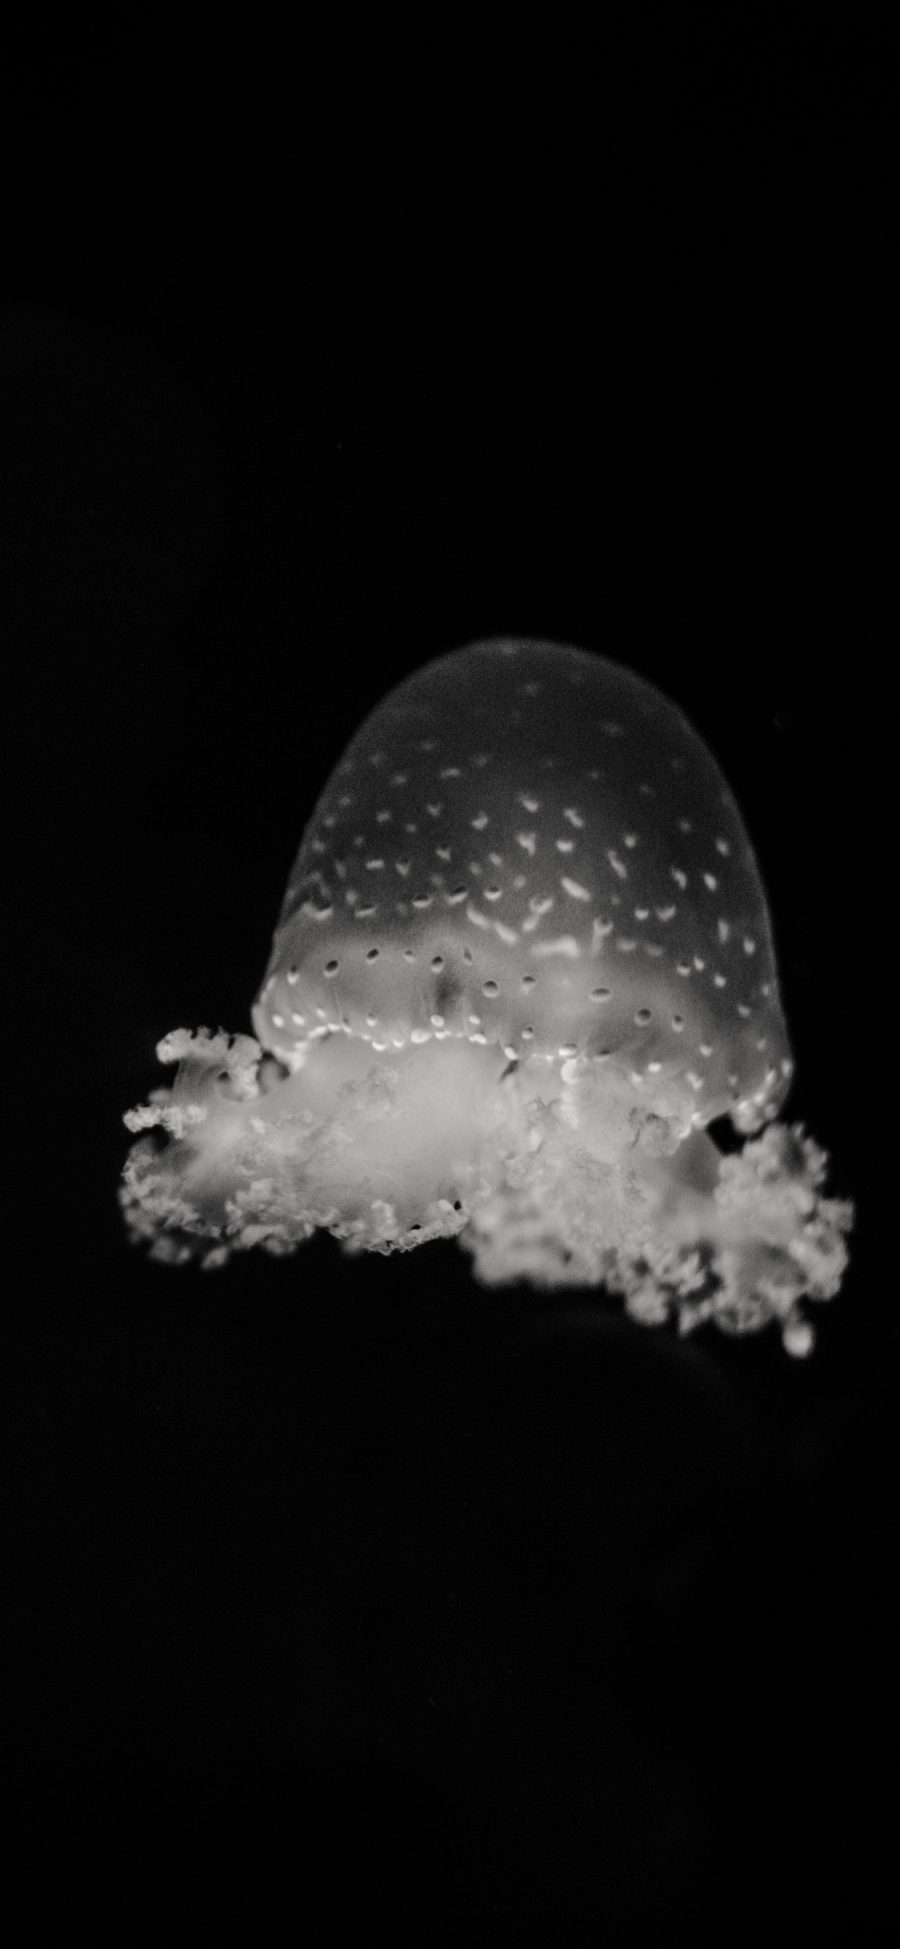 [2436×1125]水母 海洋生物 黑白 海底 苹果手机壁纸图片